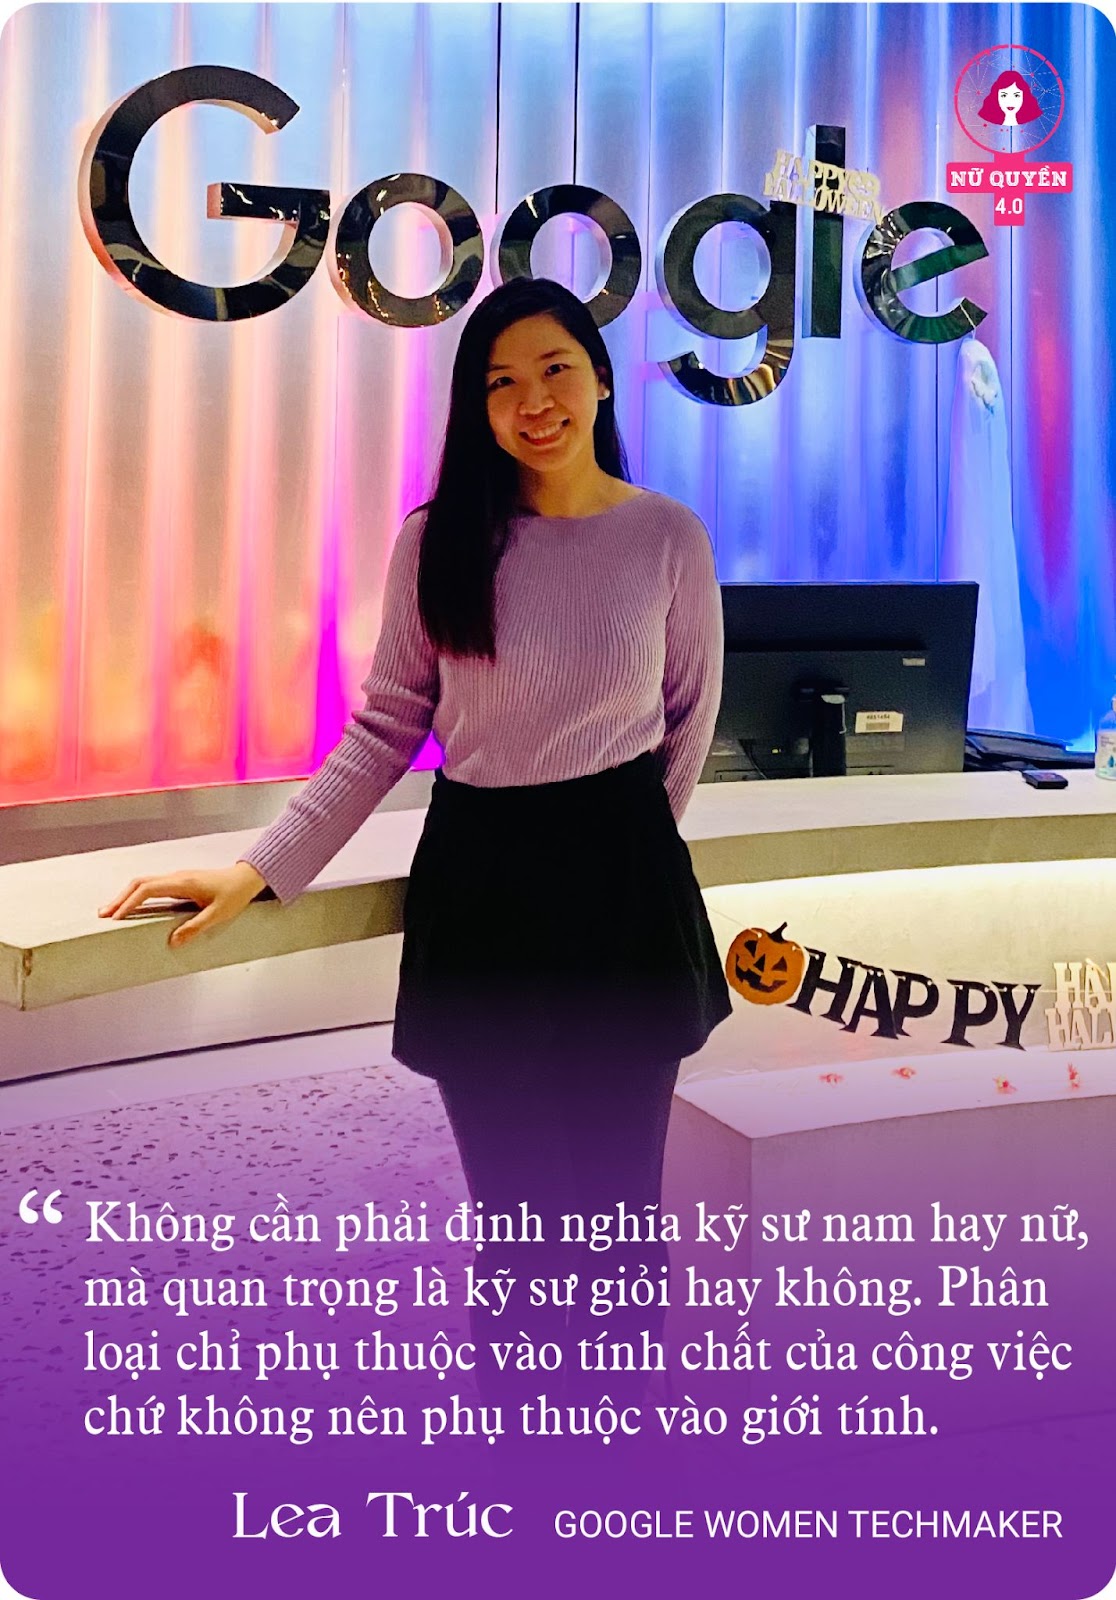 Đại sứ nữ nhân công nghệ đầu tiên của Google tại VN: “Đưa Việt Nam lên bản đồ nữ nhân công nghệ thế giới, để phụ nữ tỏa sáng trên vũ đài lập trình” - Ảnh 9.